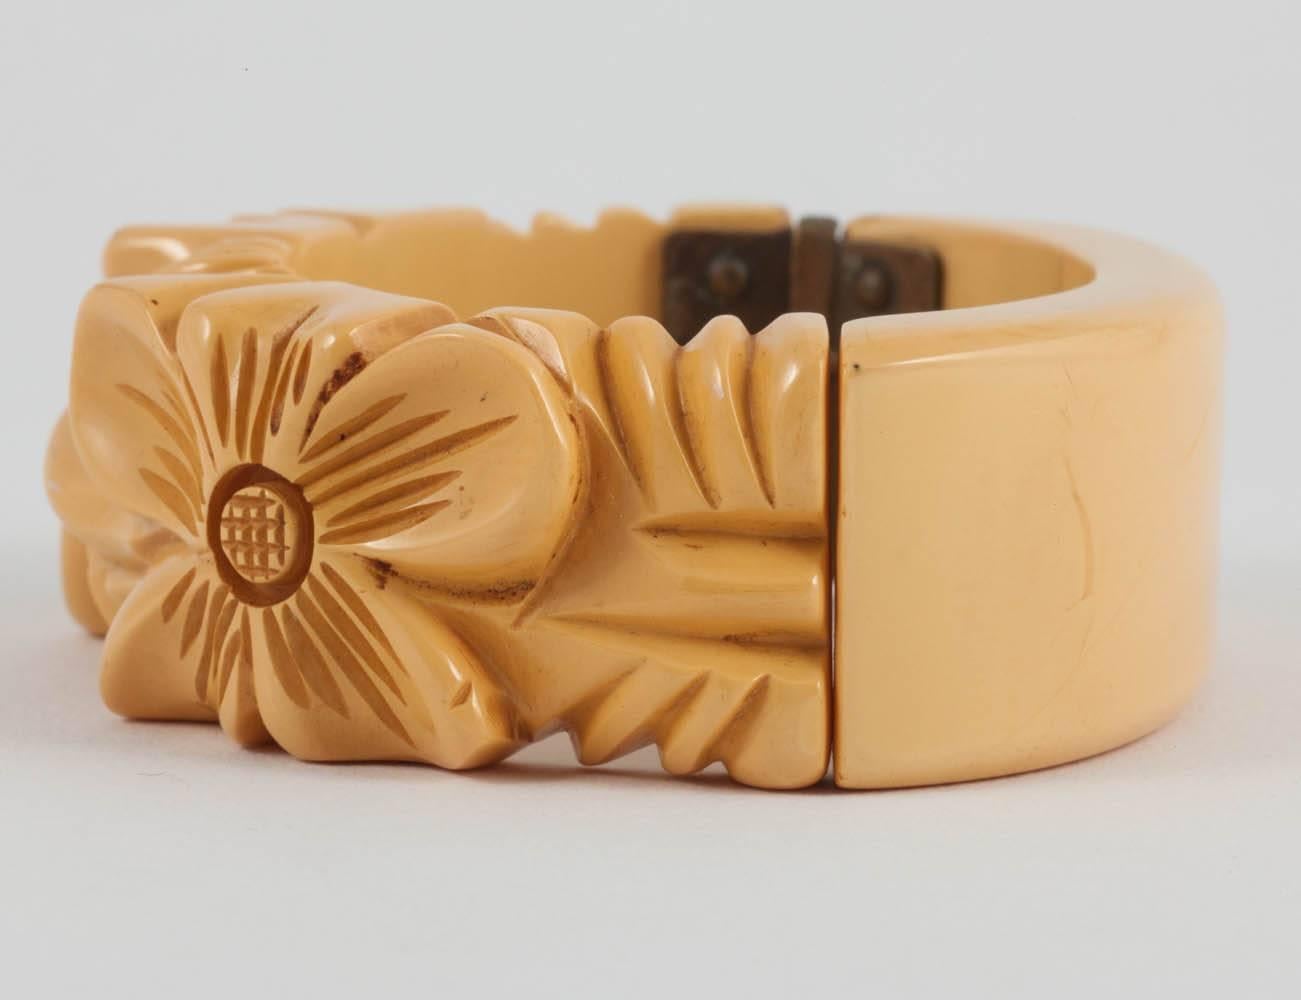 Un beau bracelet en bakélite sculpté des années 1930, dans une chaude couleur crème au beurre.
Deux autres bracelets similaires sont également proposés cette semaine, en marron et en vert profond, des couleurs plus hivernales - ils seraient